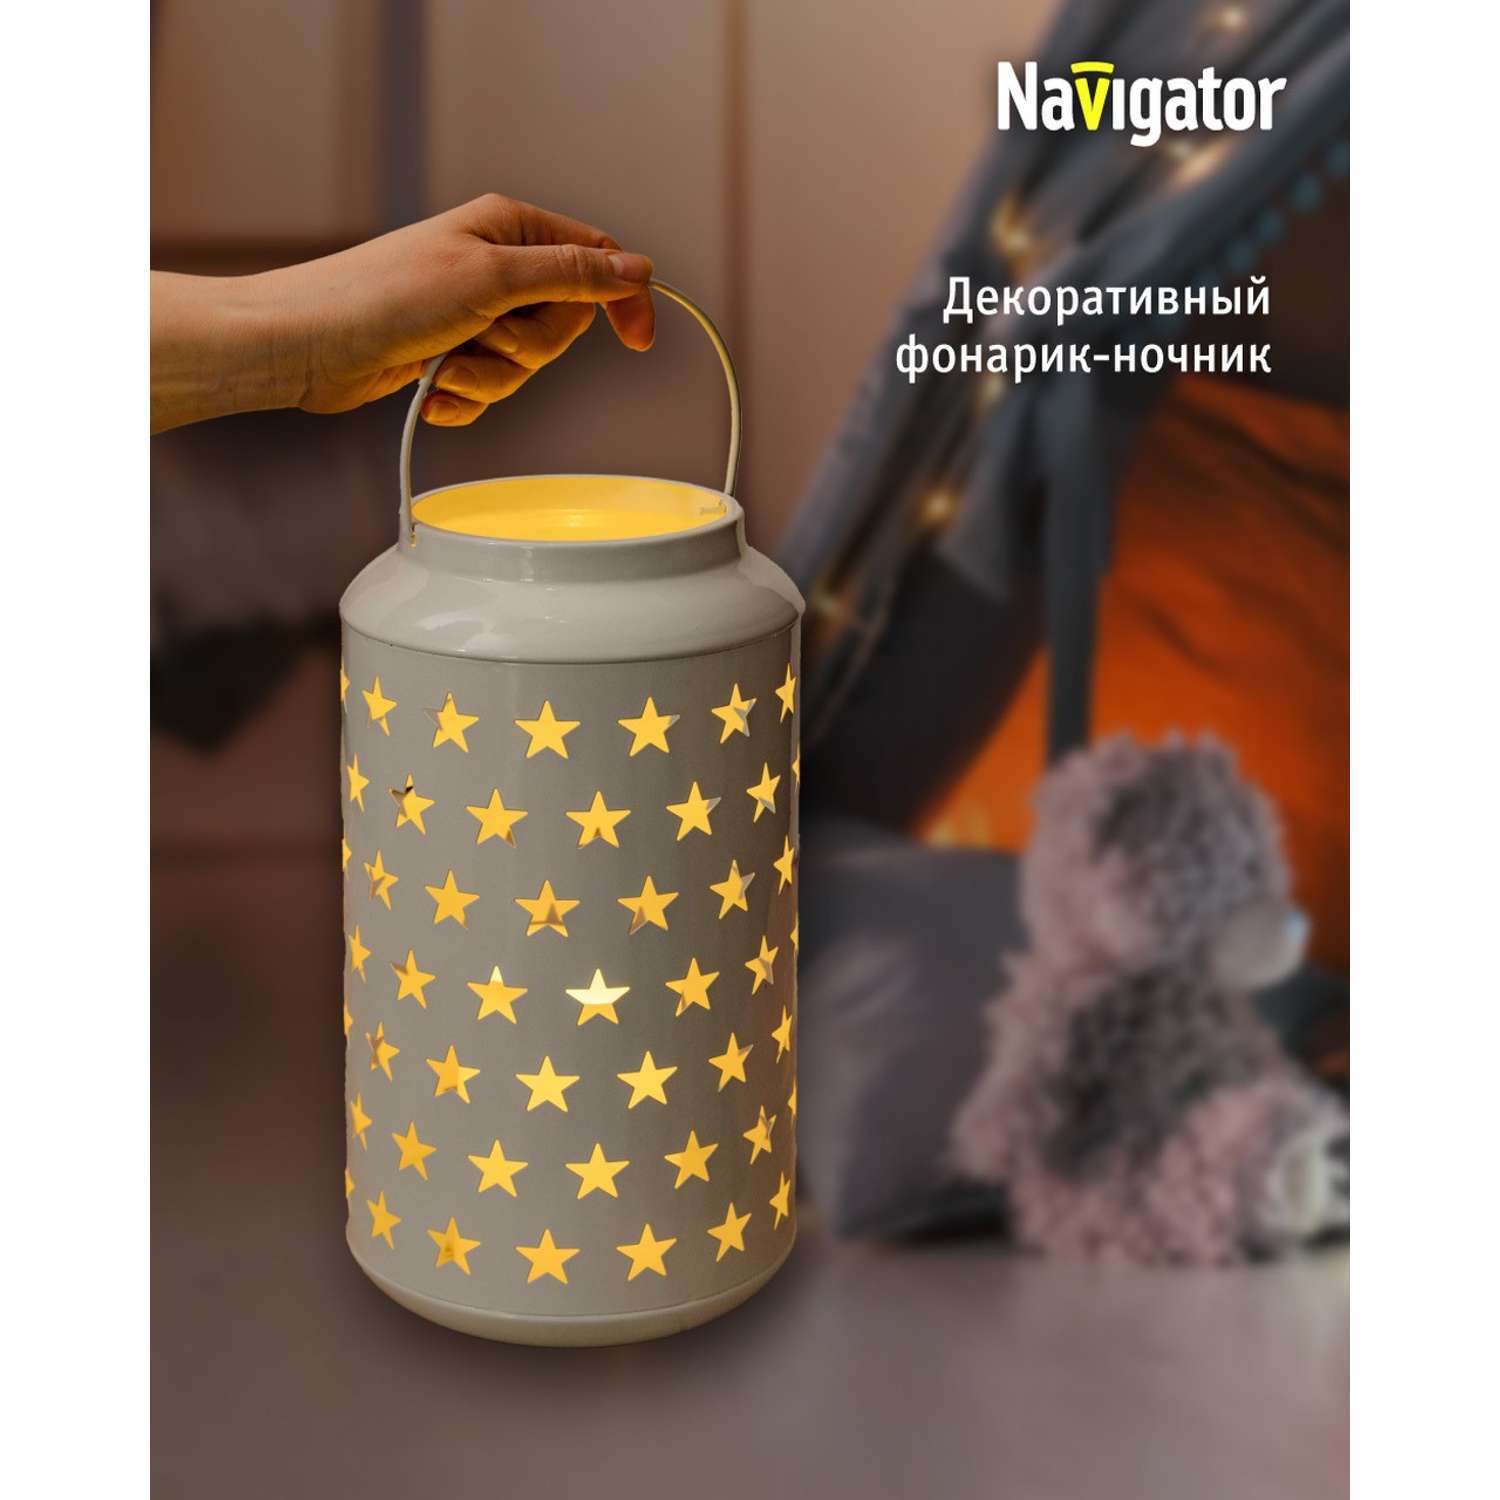 Декоративный светильник-ночник NaVigator светодиодный для детской комнаты узор звезды - фото 1